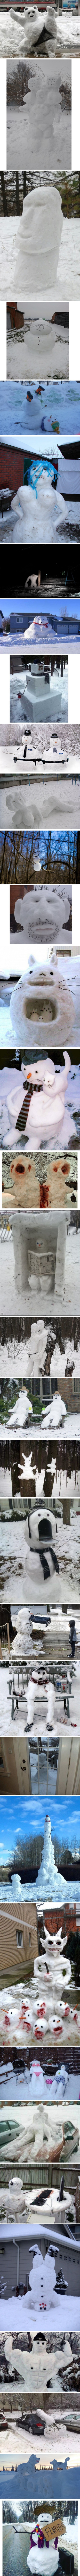 Des bonshommes de neige.